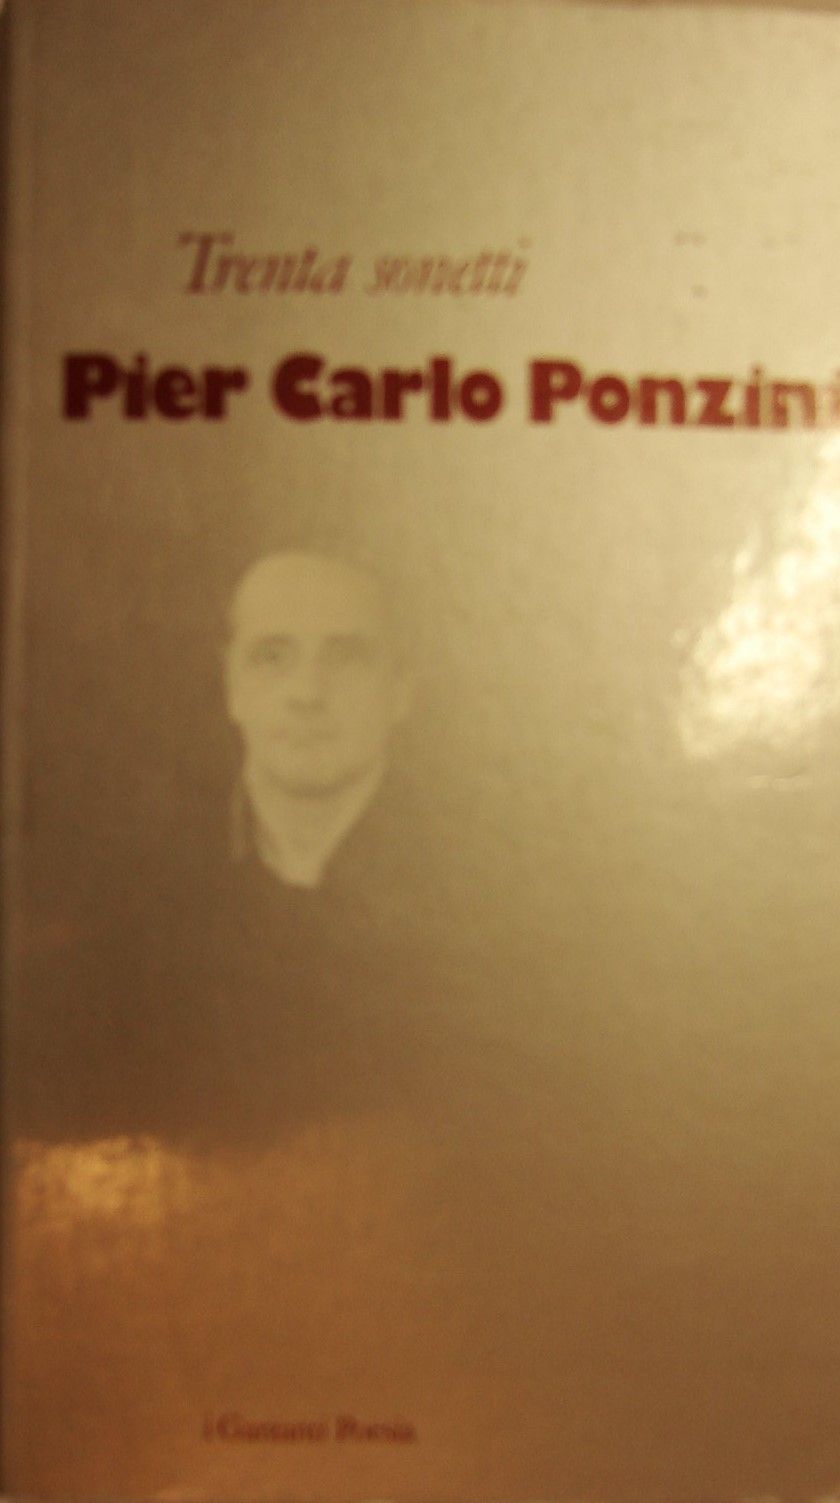 “Trenta sonetti” di Pier Carlo Ponzini in bancarella